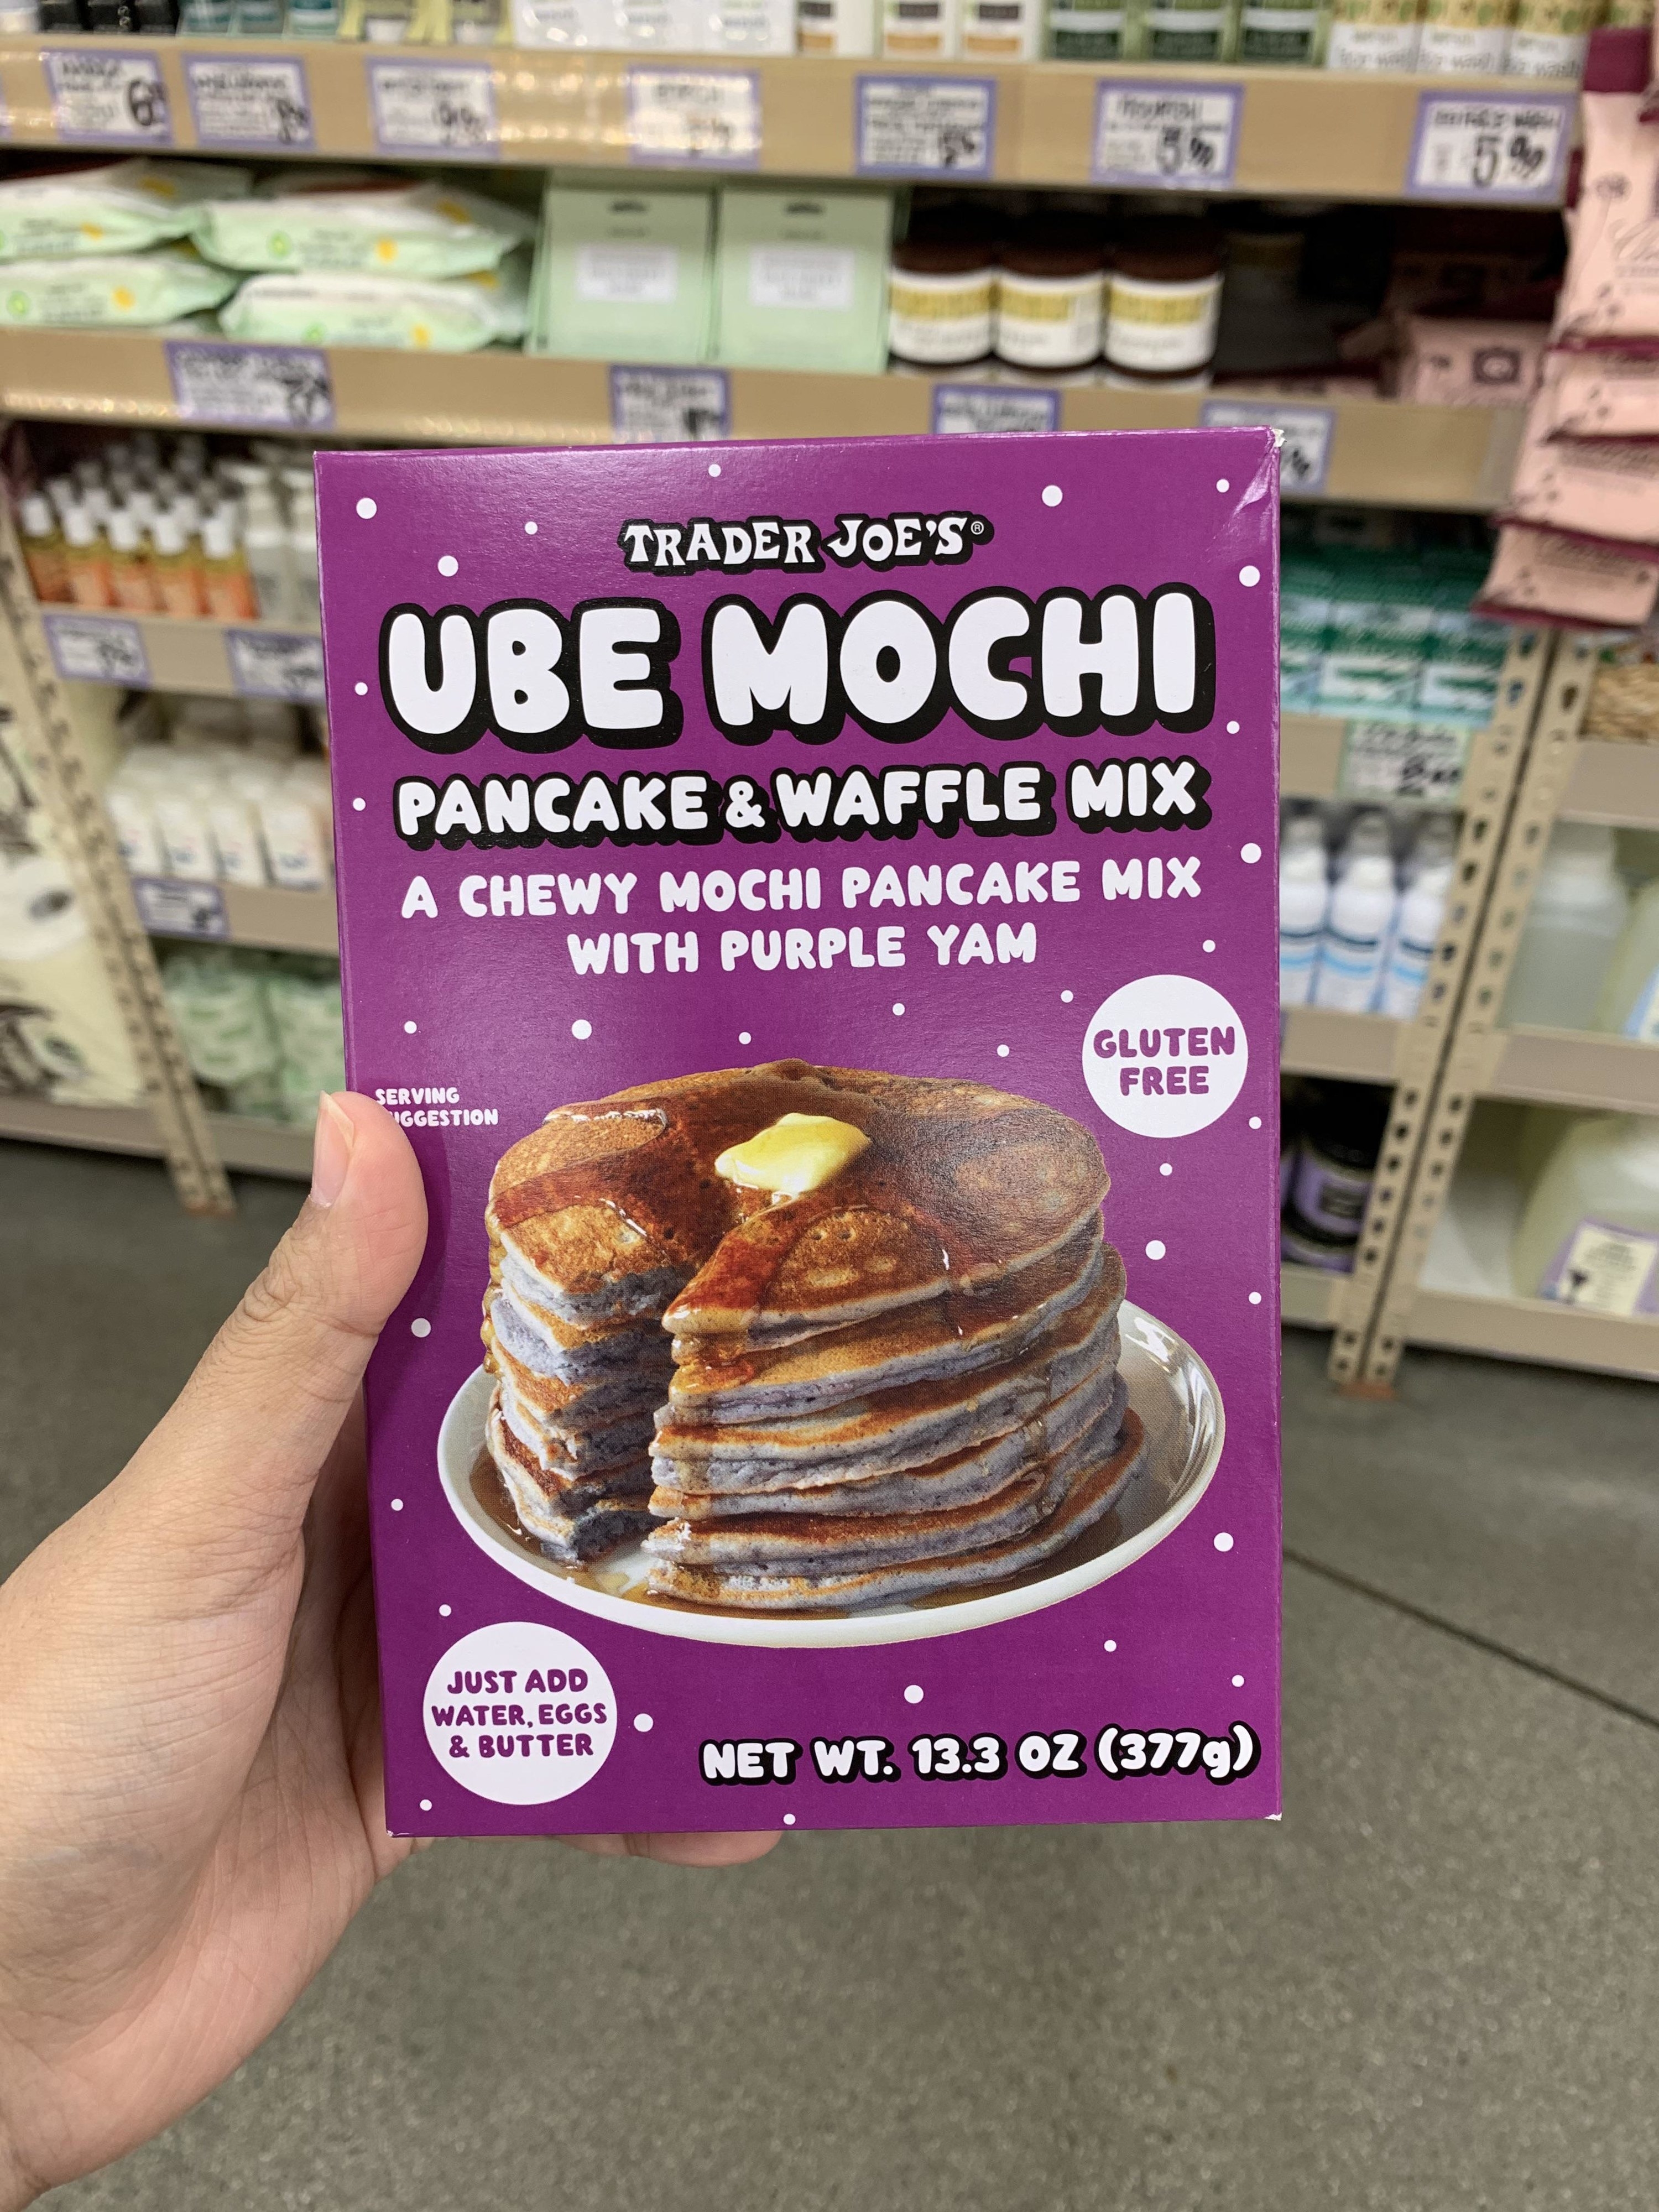 A box of ube mochi pancake and waffle mix.